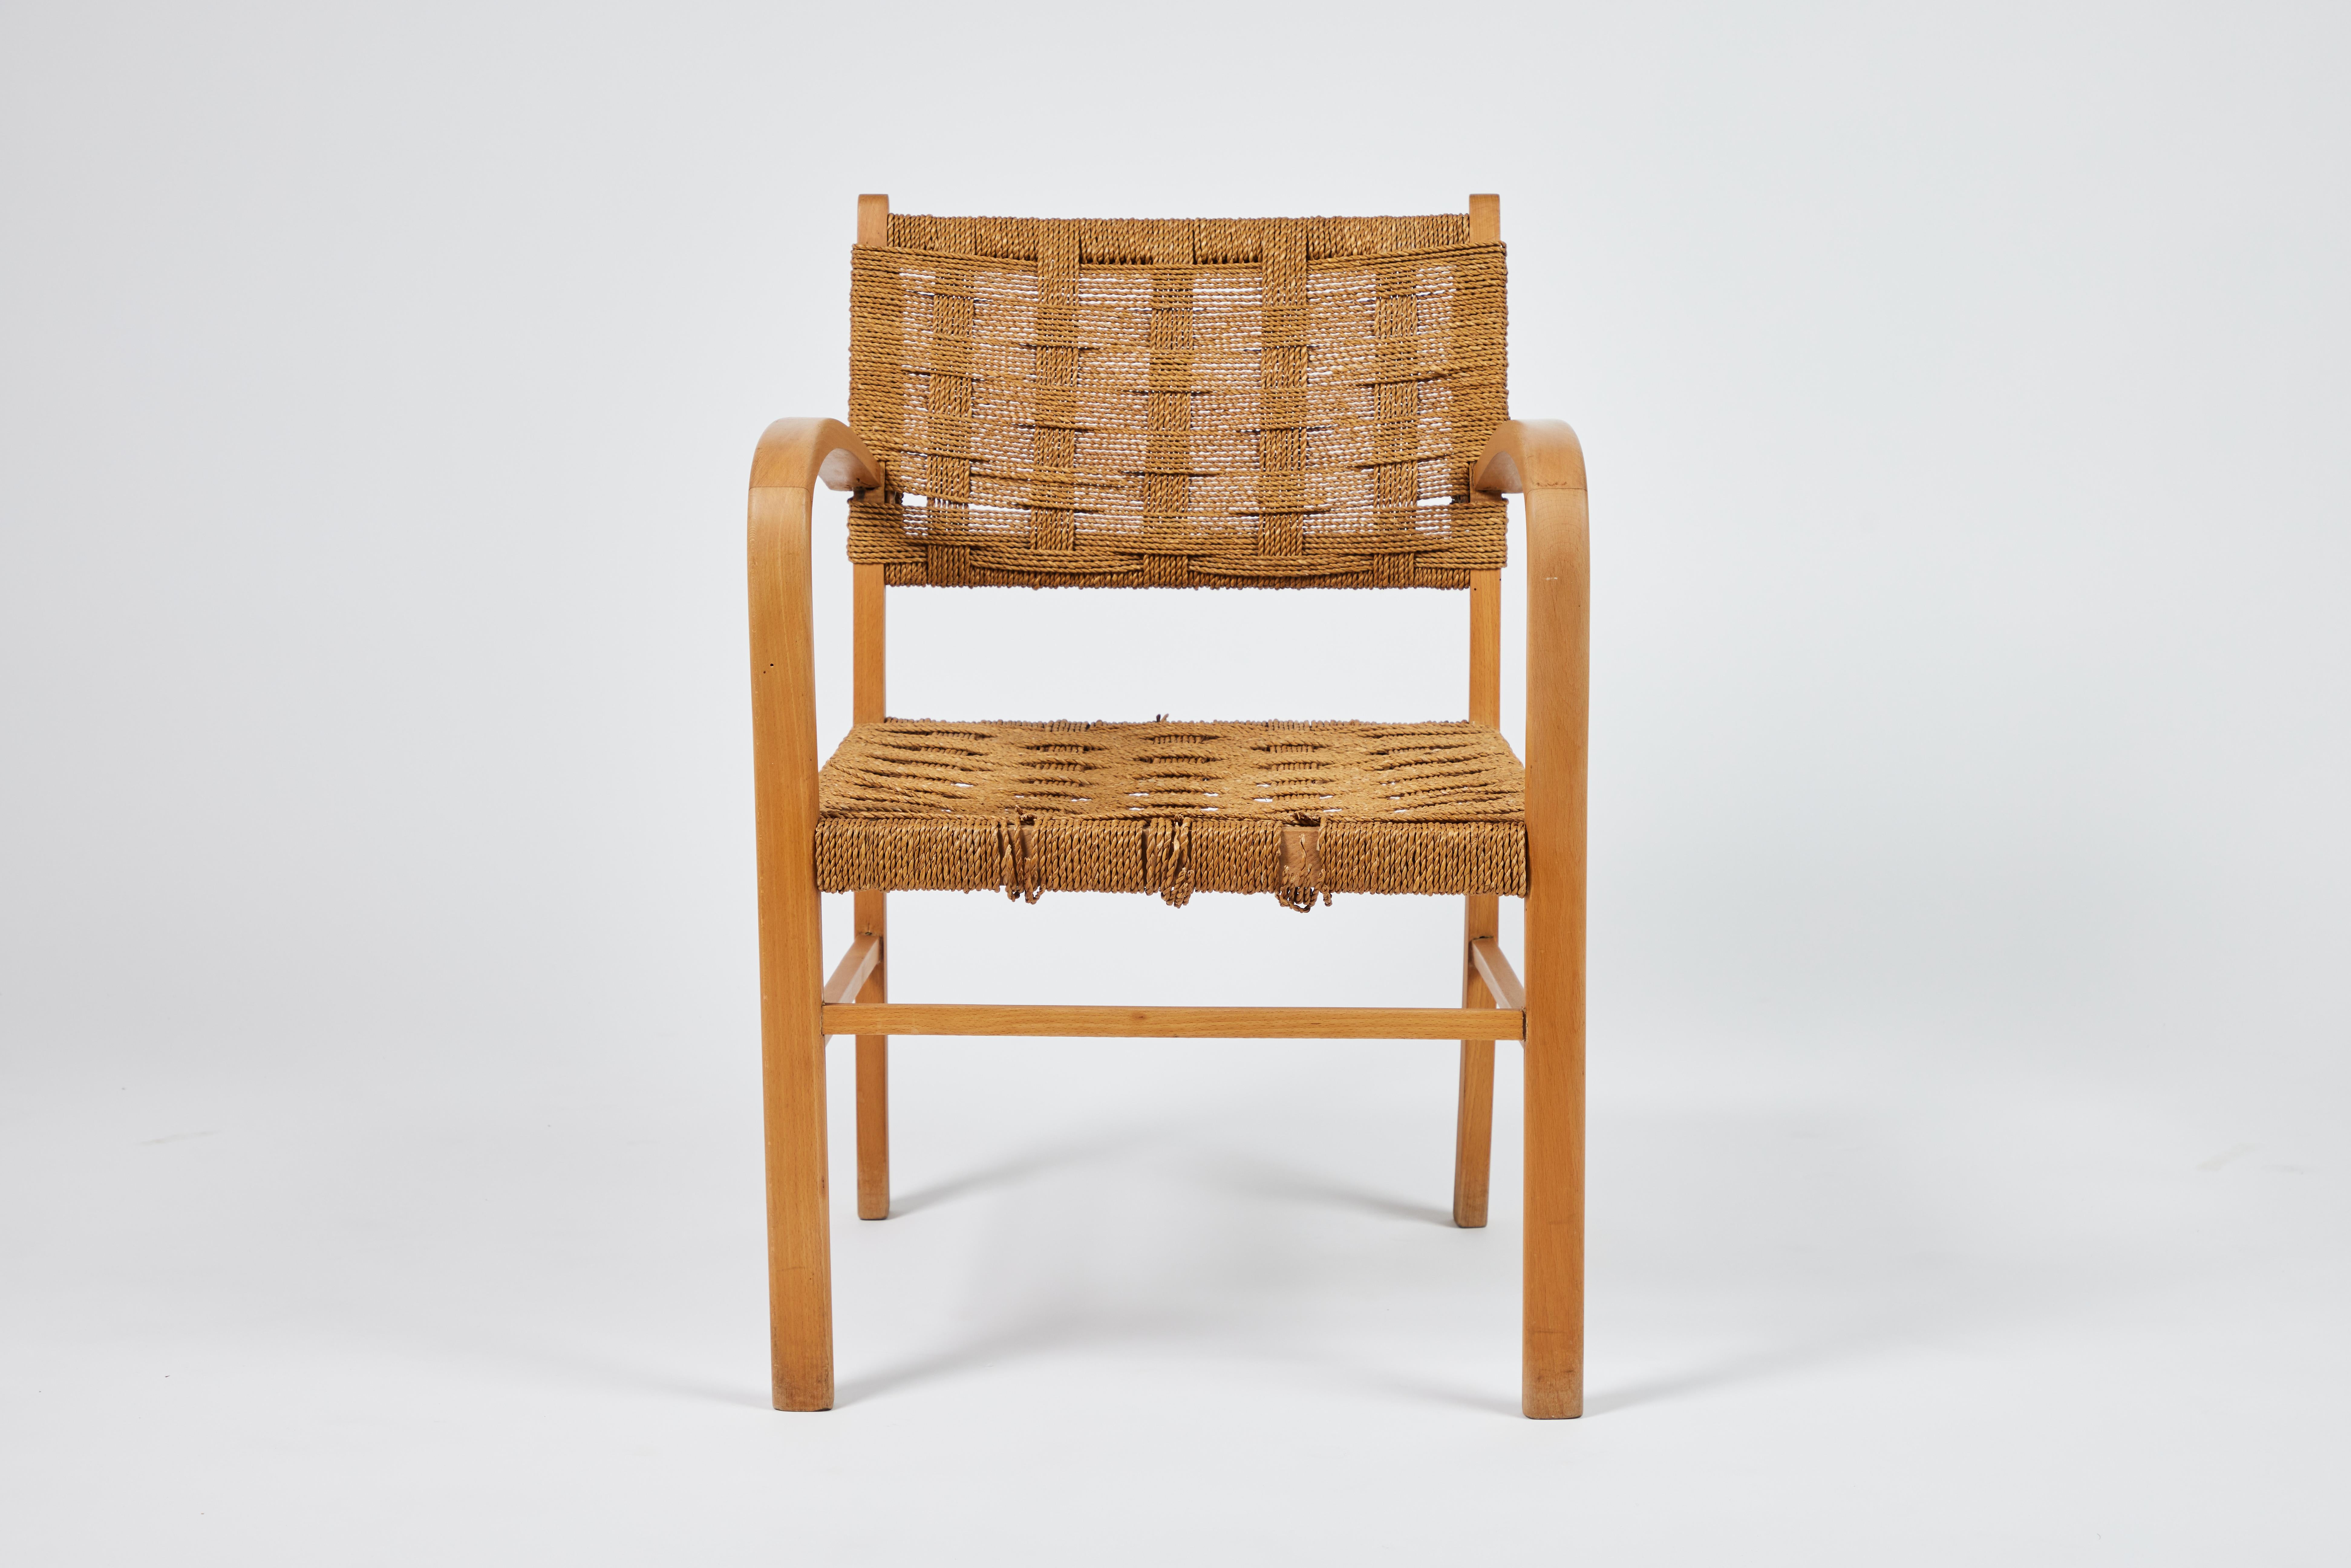 Französischer Sessel aus Eiche aus der Mitte des Jahrhunderts mit geschwungenen, skulpturalen Armlehnen. Die geflochtenen Sitz- und Rückenstützen bestehen aus Gruppen von 8 dünnen Seilen, die jeweils einen 